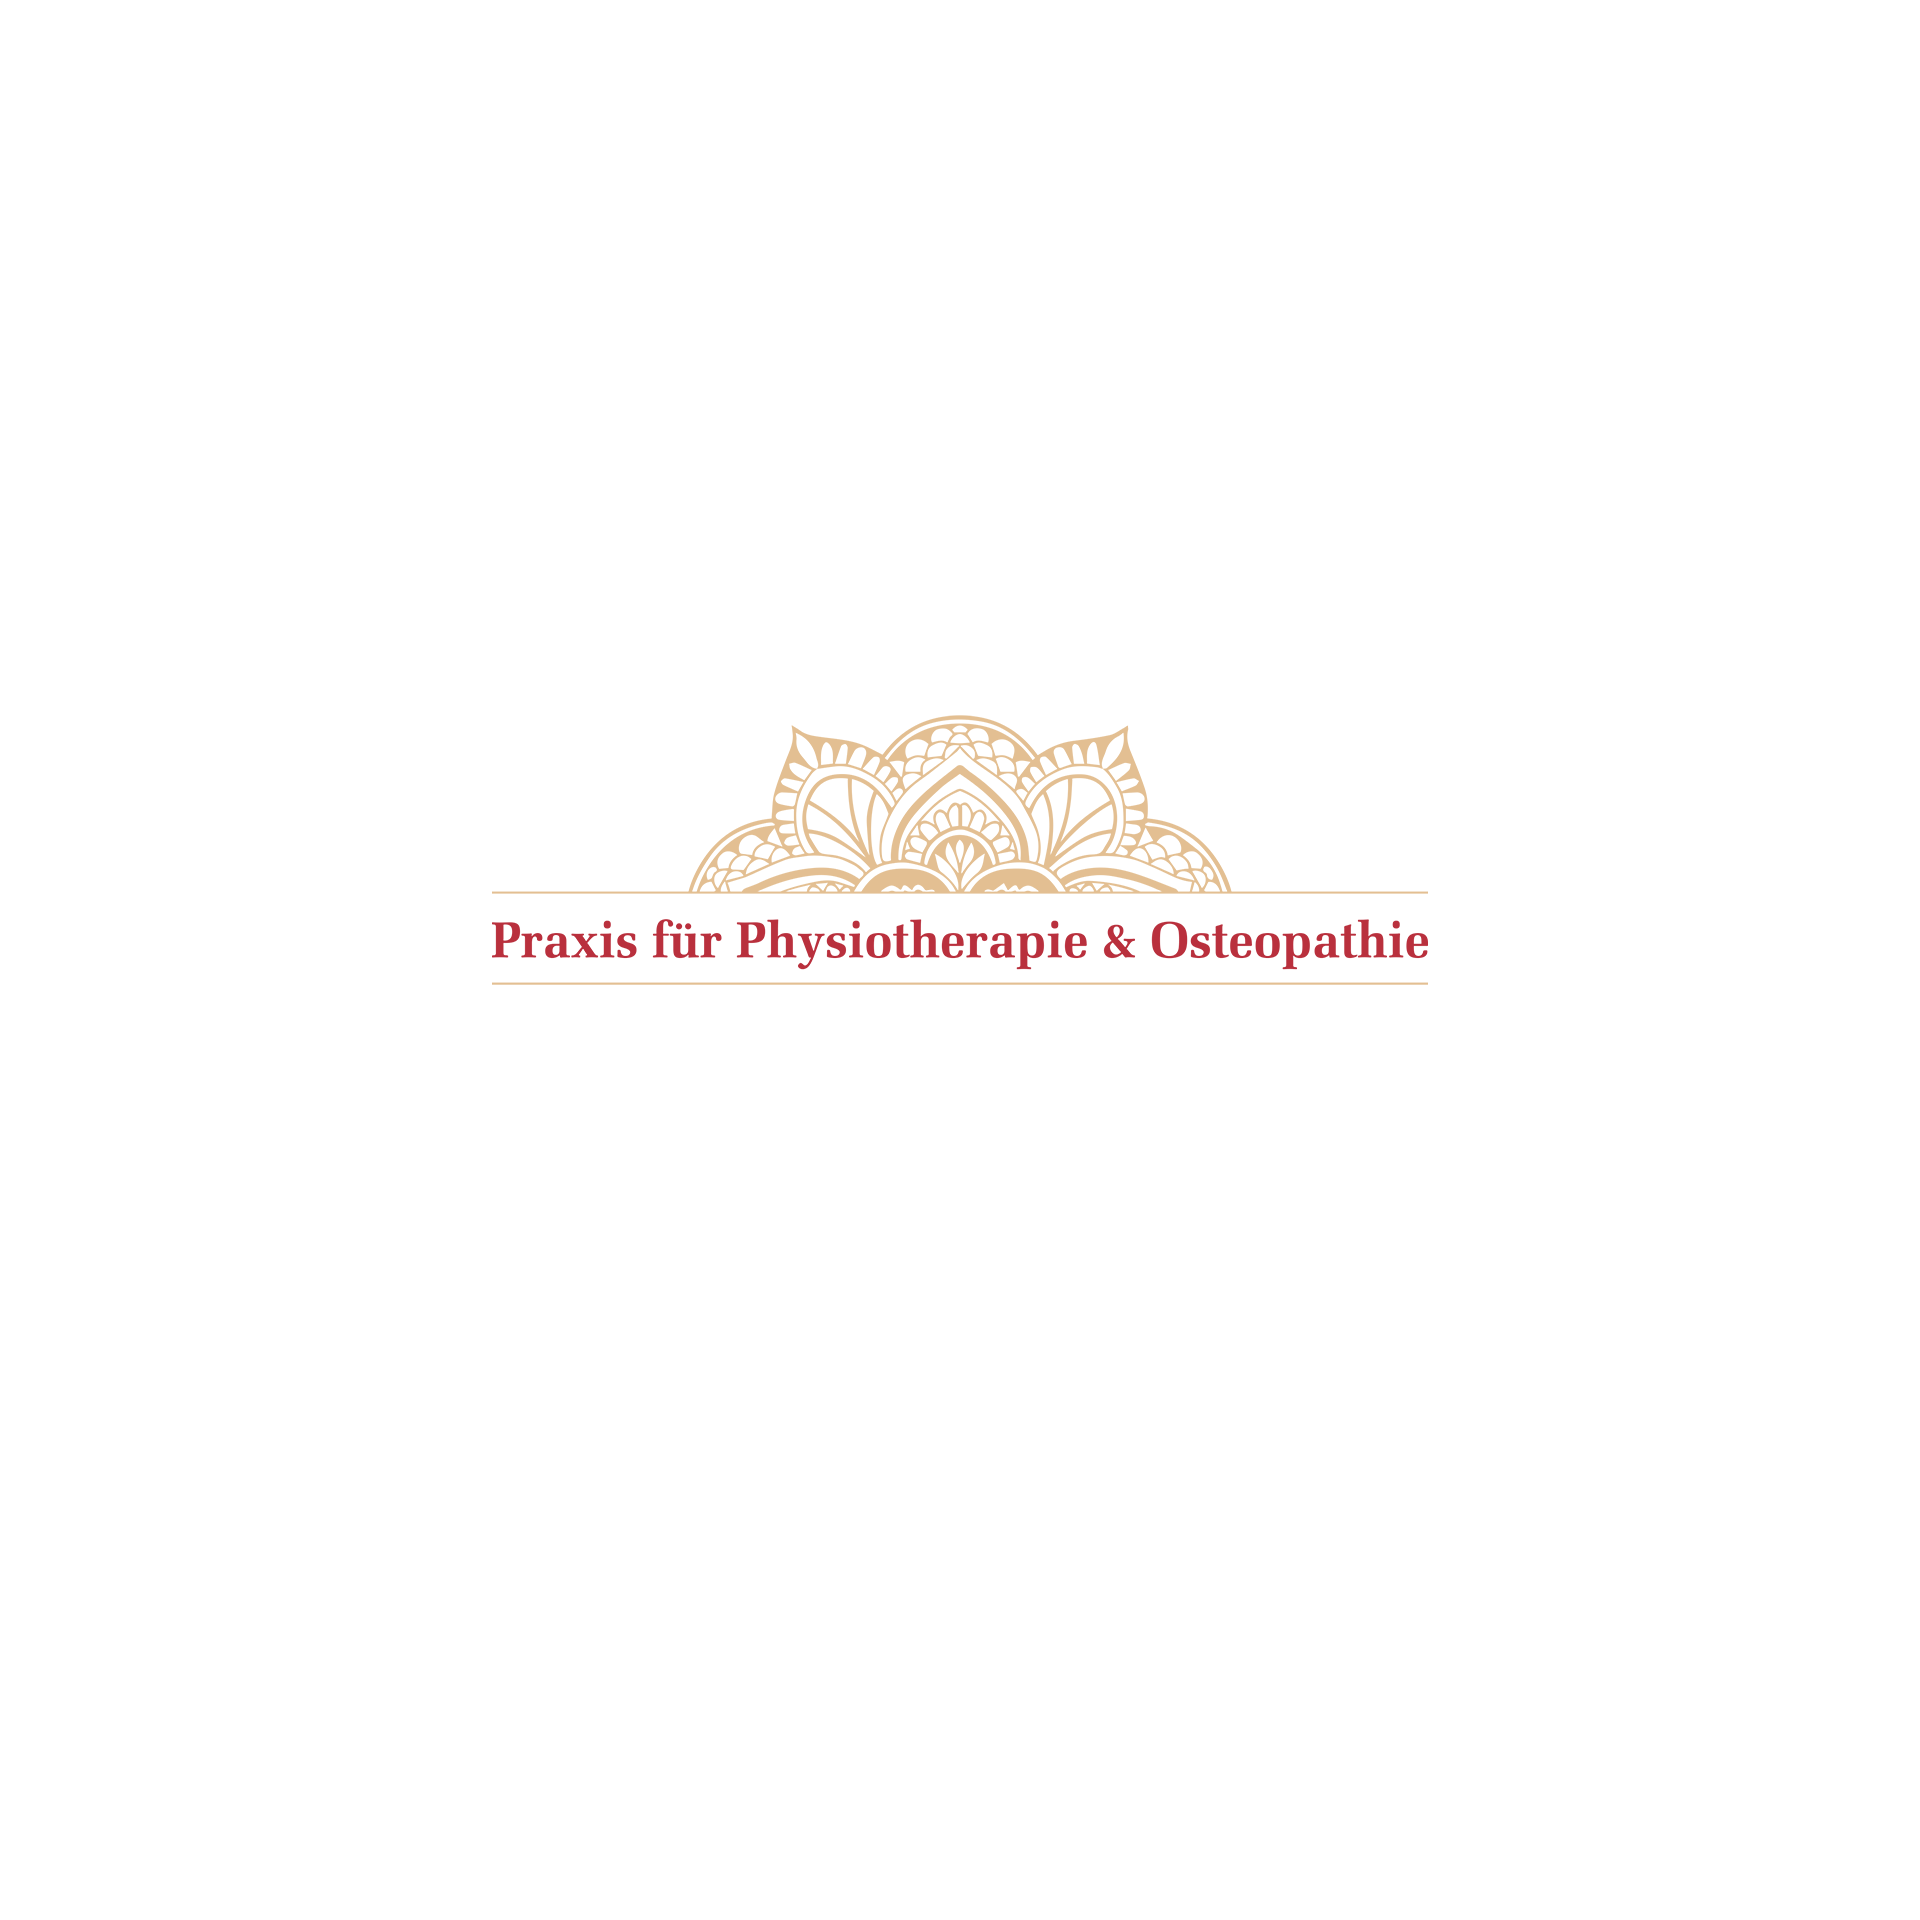 Praxis für Physiotherapie und Osteopathie - Heilpraktikerin Silvia Kasperschinski in Zossen in Brandenburg - Logo